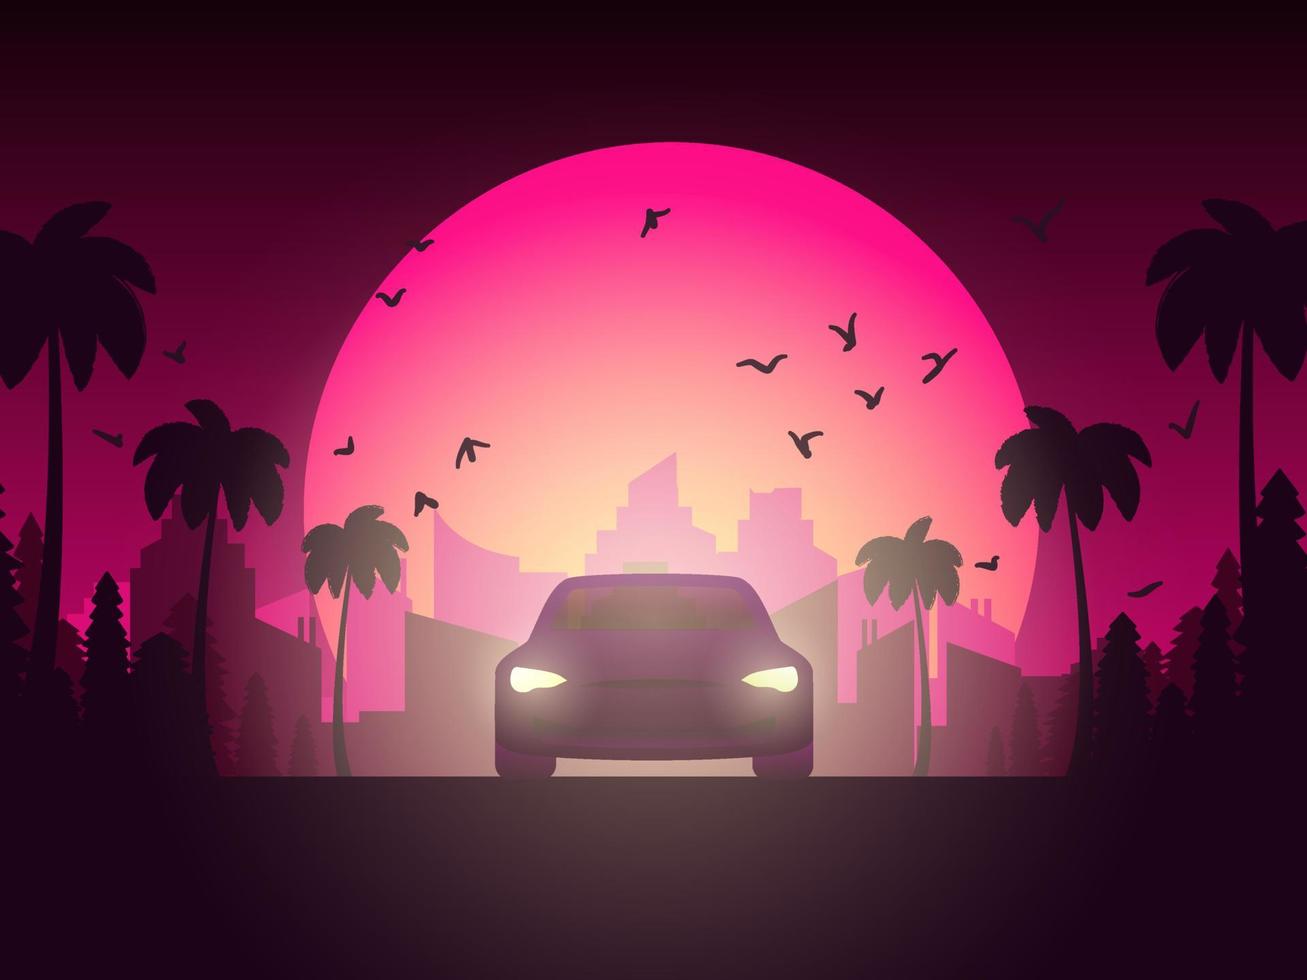 affiche avec voiture. coucher de soleil à la californie. palmiers, pins et paysage urbain. illustration vectorielle en couleurs roses. vecteur